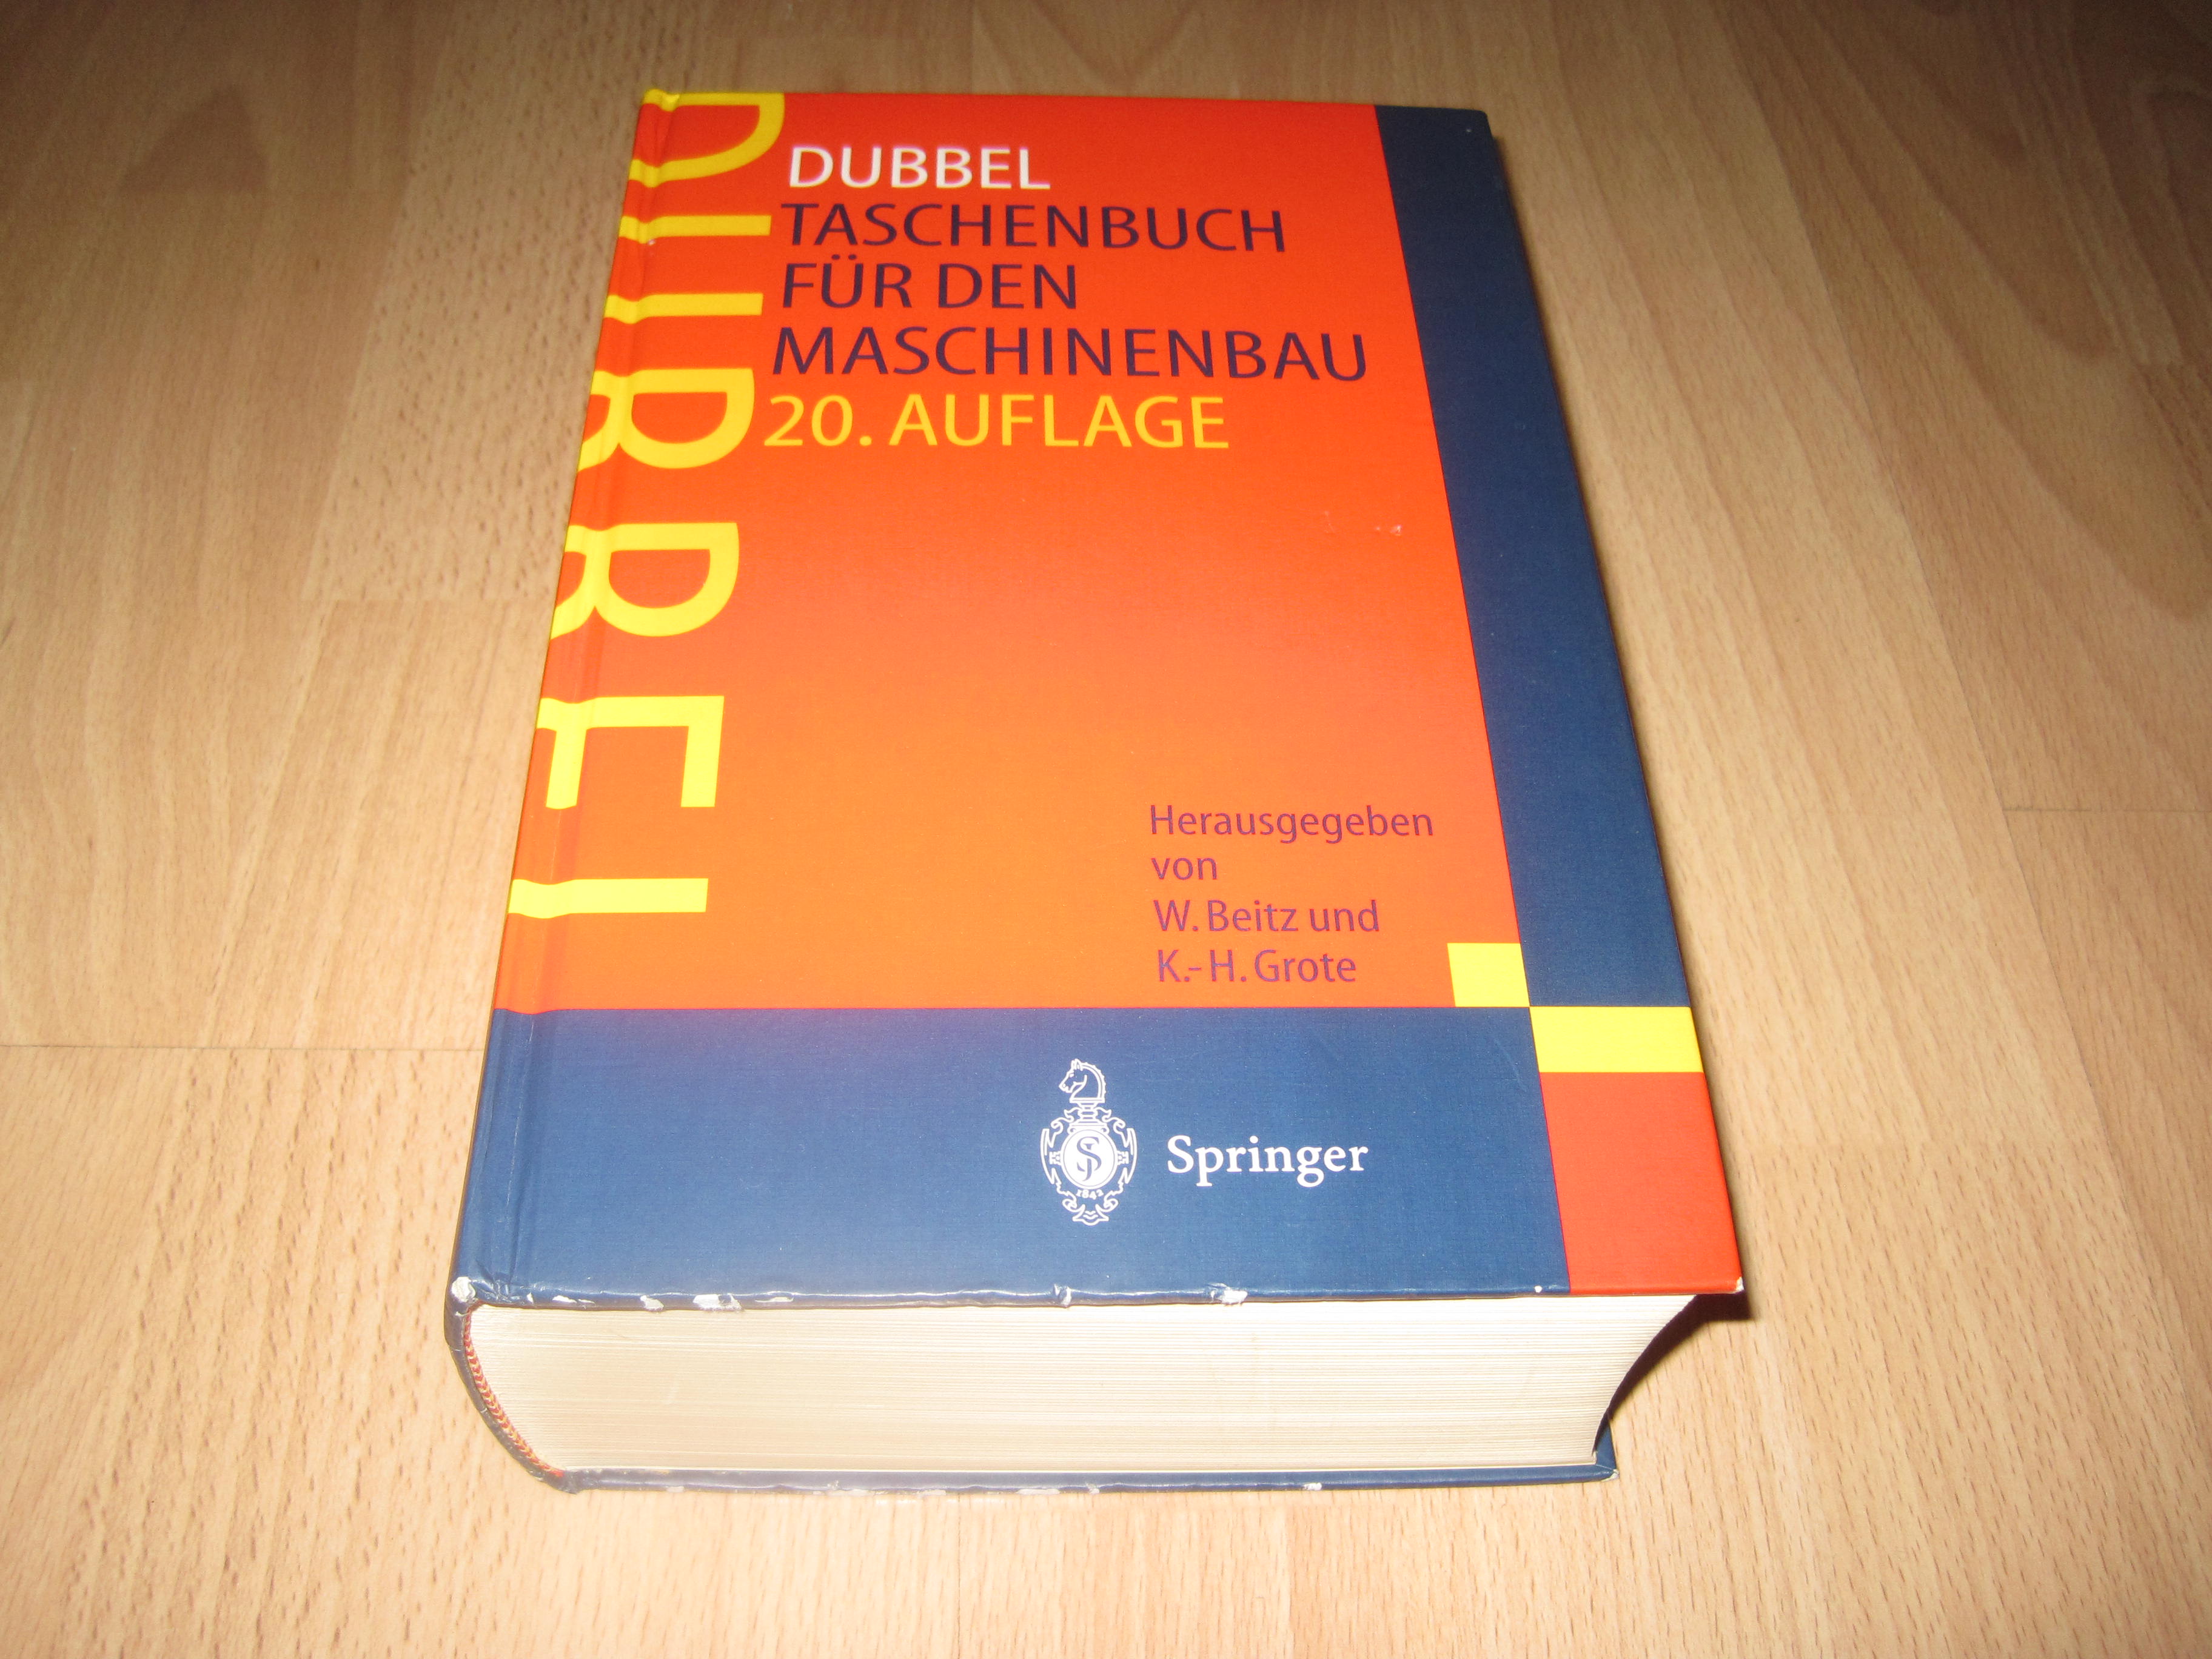 Dubbel, Taschenbuch für den Maschinenbau / 20. Auflage - Beitz, W., K. H. Grote und H. Dubbel